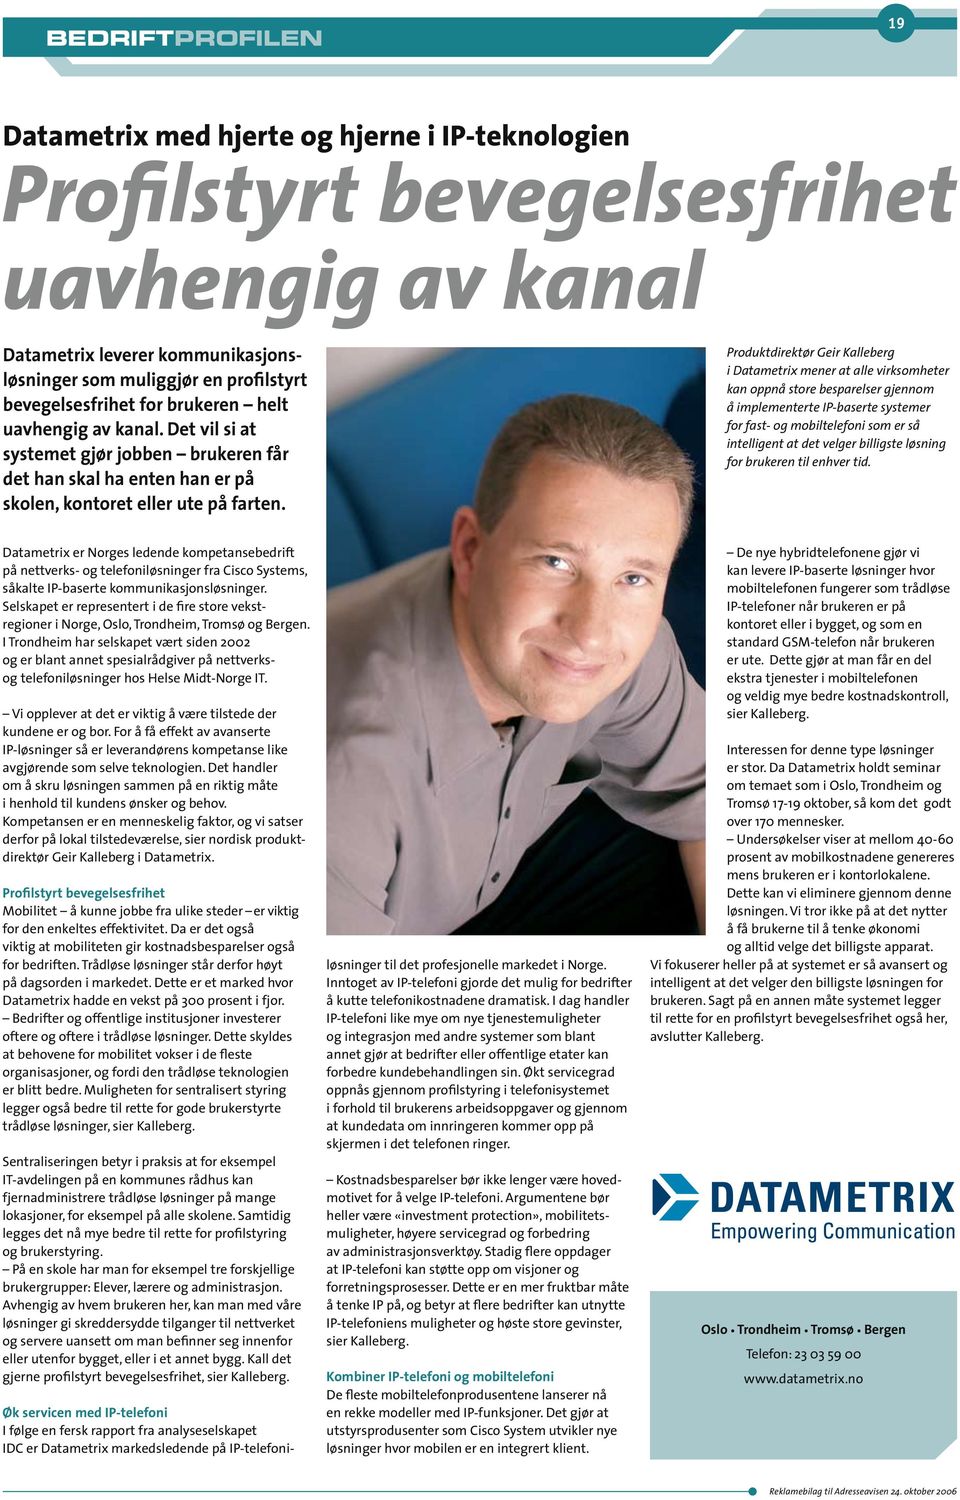 Produktdirektør Geir Kalleberg i Datametrix mener at alle virksomheter kan oppnå store besparelser gjennom å implementerte IP-baserte systemer for fast- og mobiltelefoni som er så intelligent at det